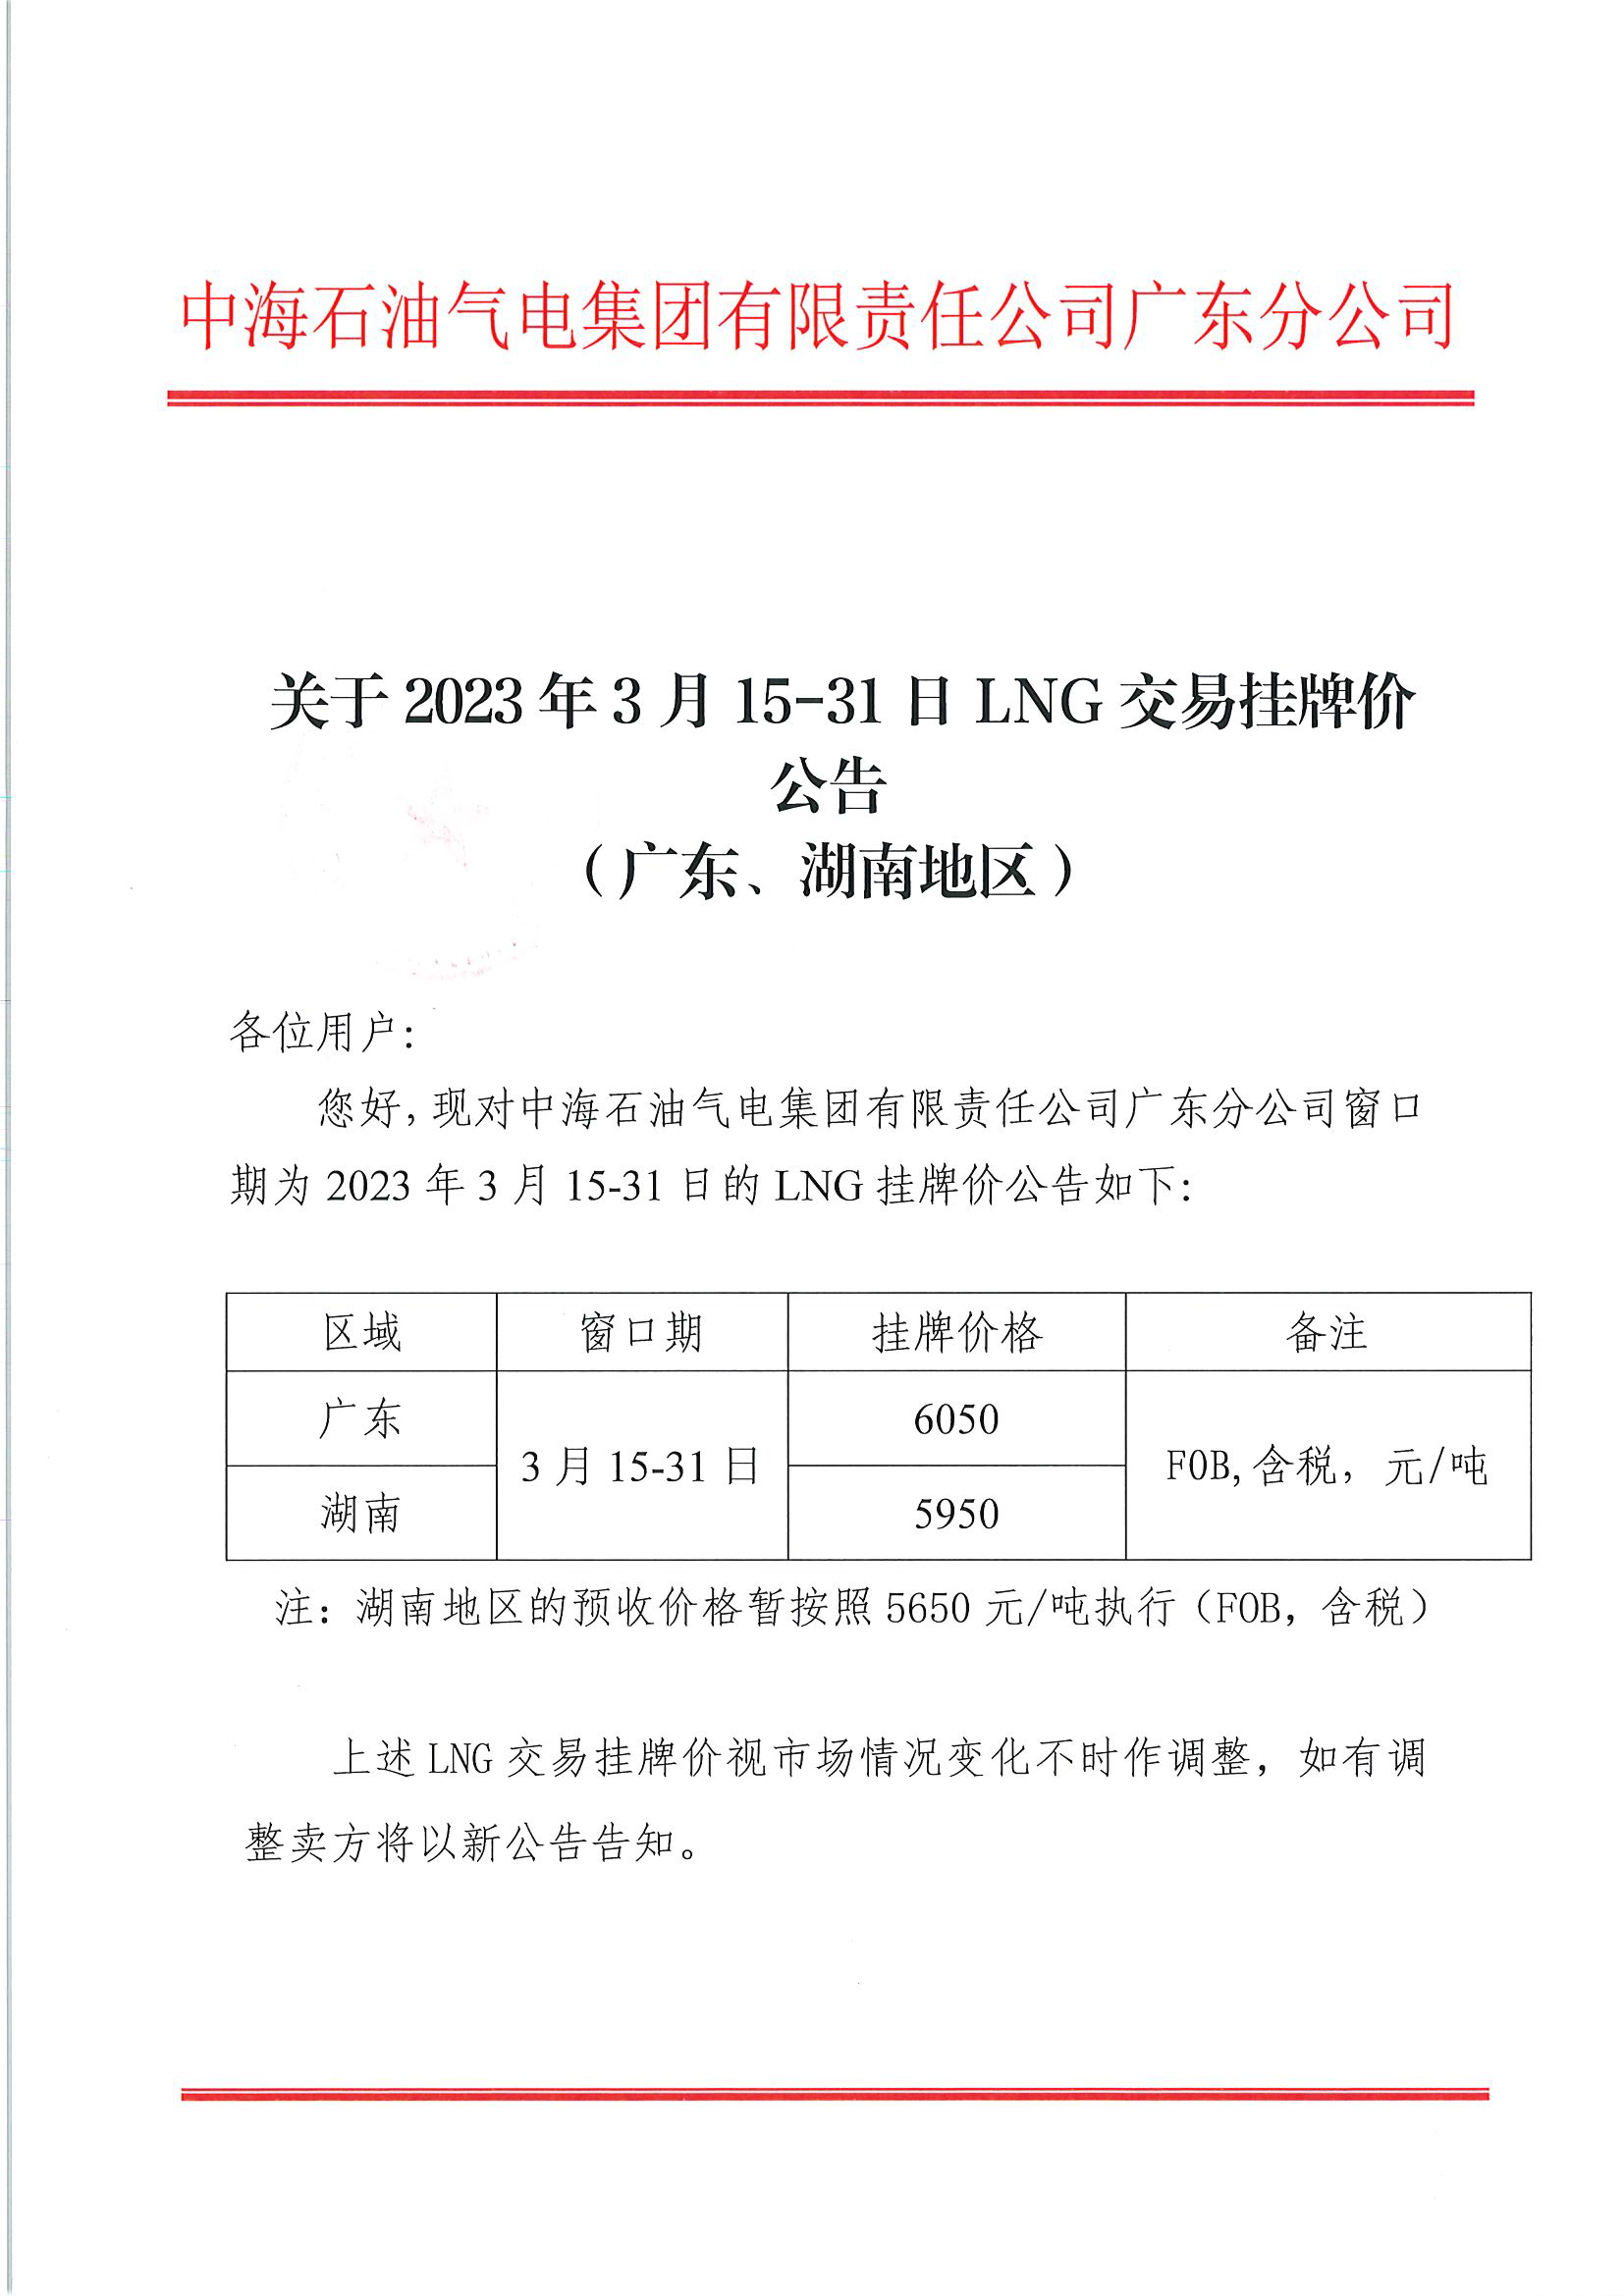 中海石油气电集团有限责任公司广东分公司关于2023年3月15-31日LNG交易挂牌价公告（广东、湖南地区）_页面_1.png